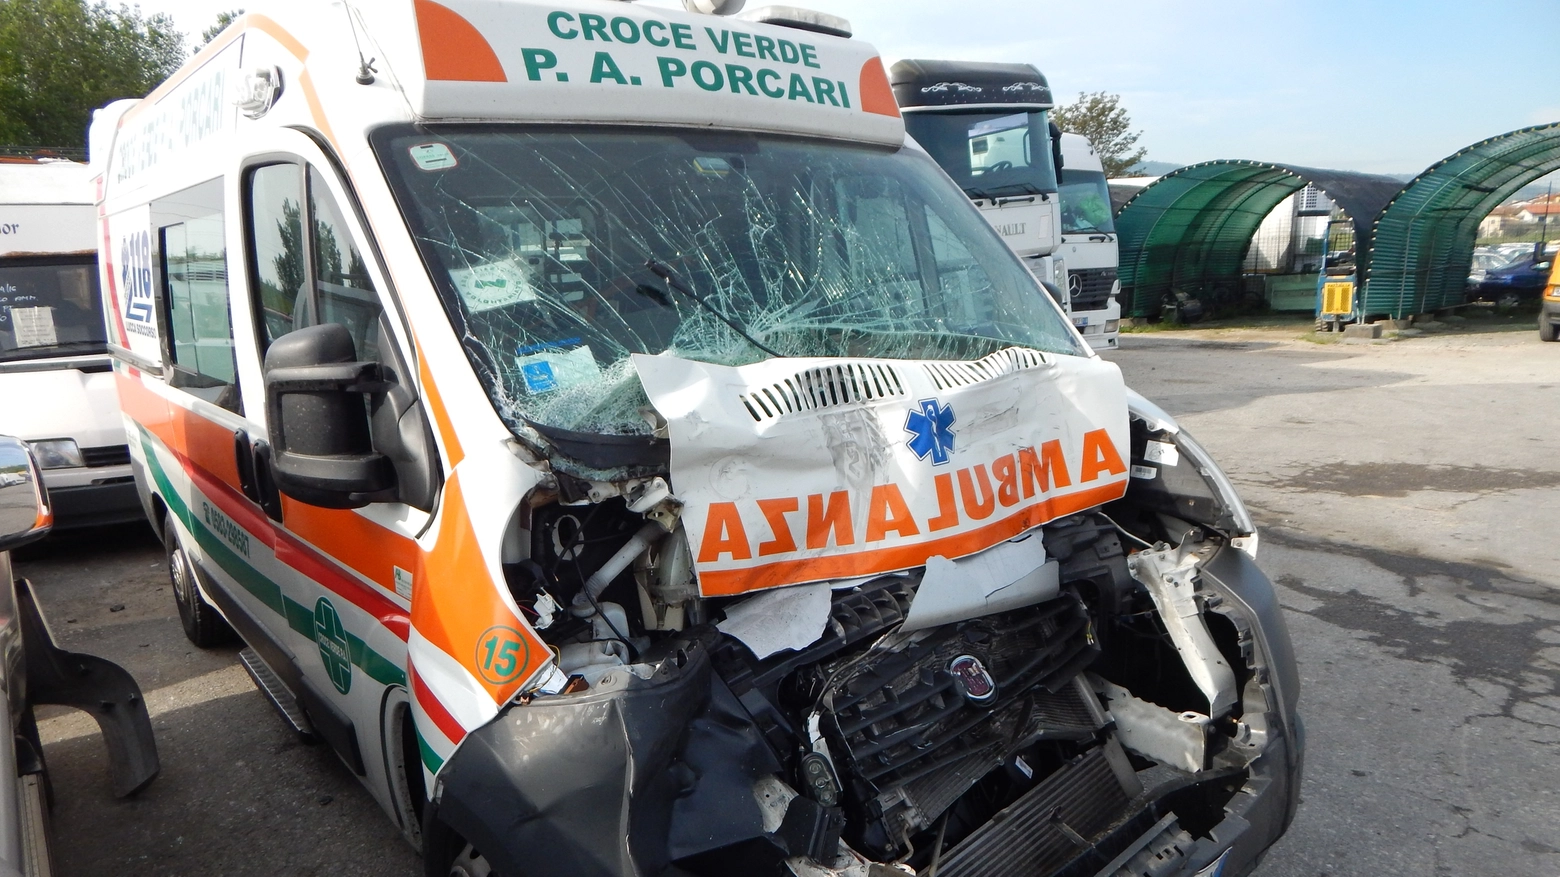 L'ambulanza coinvolta nell'incidente (foto Luca Sforzi)